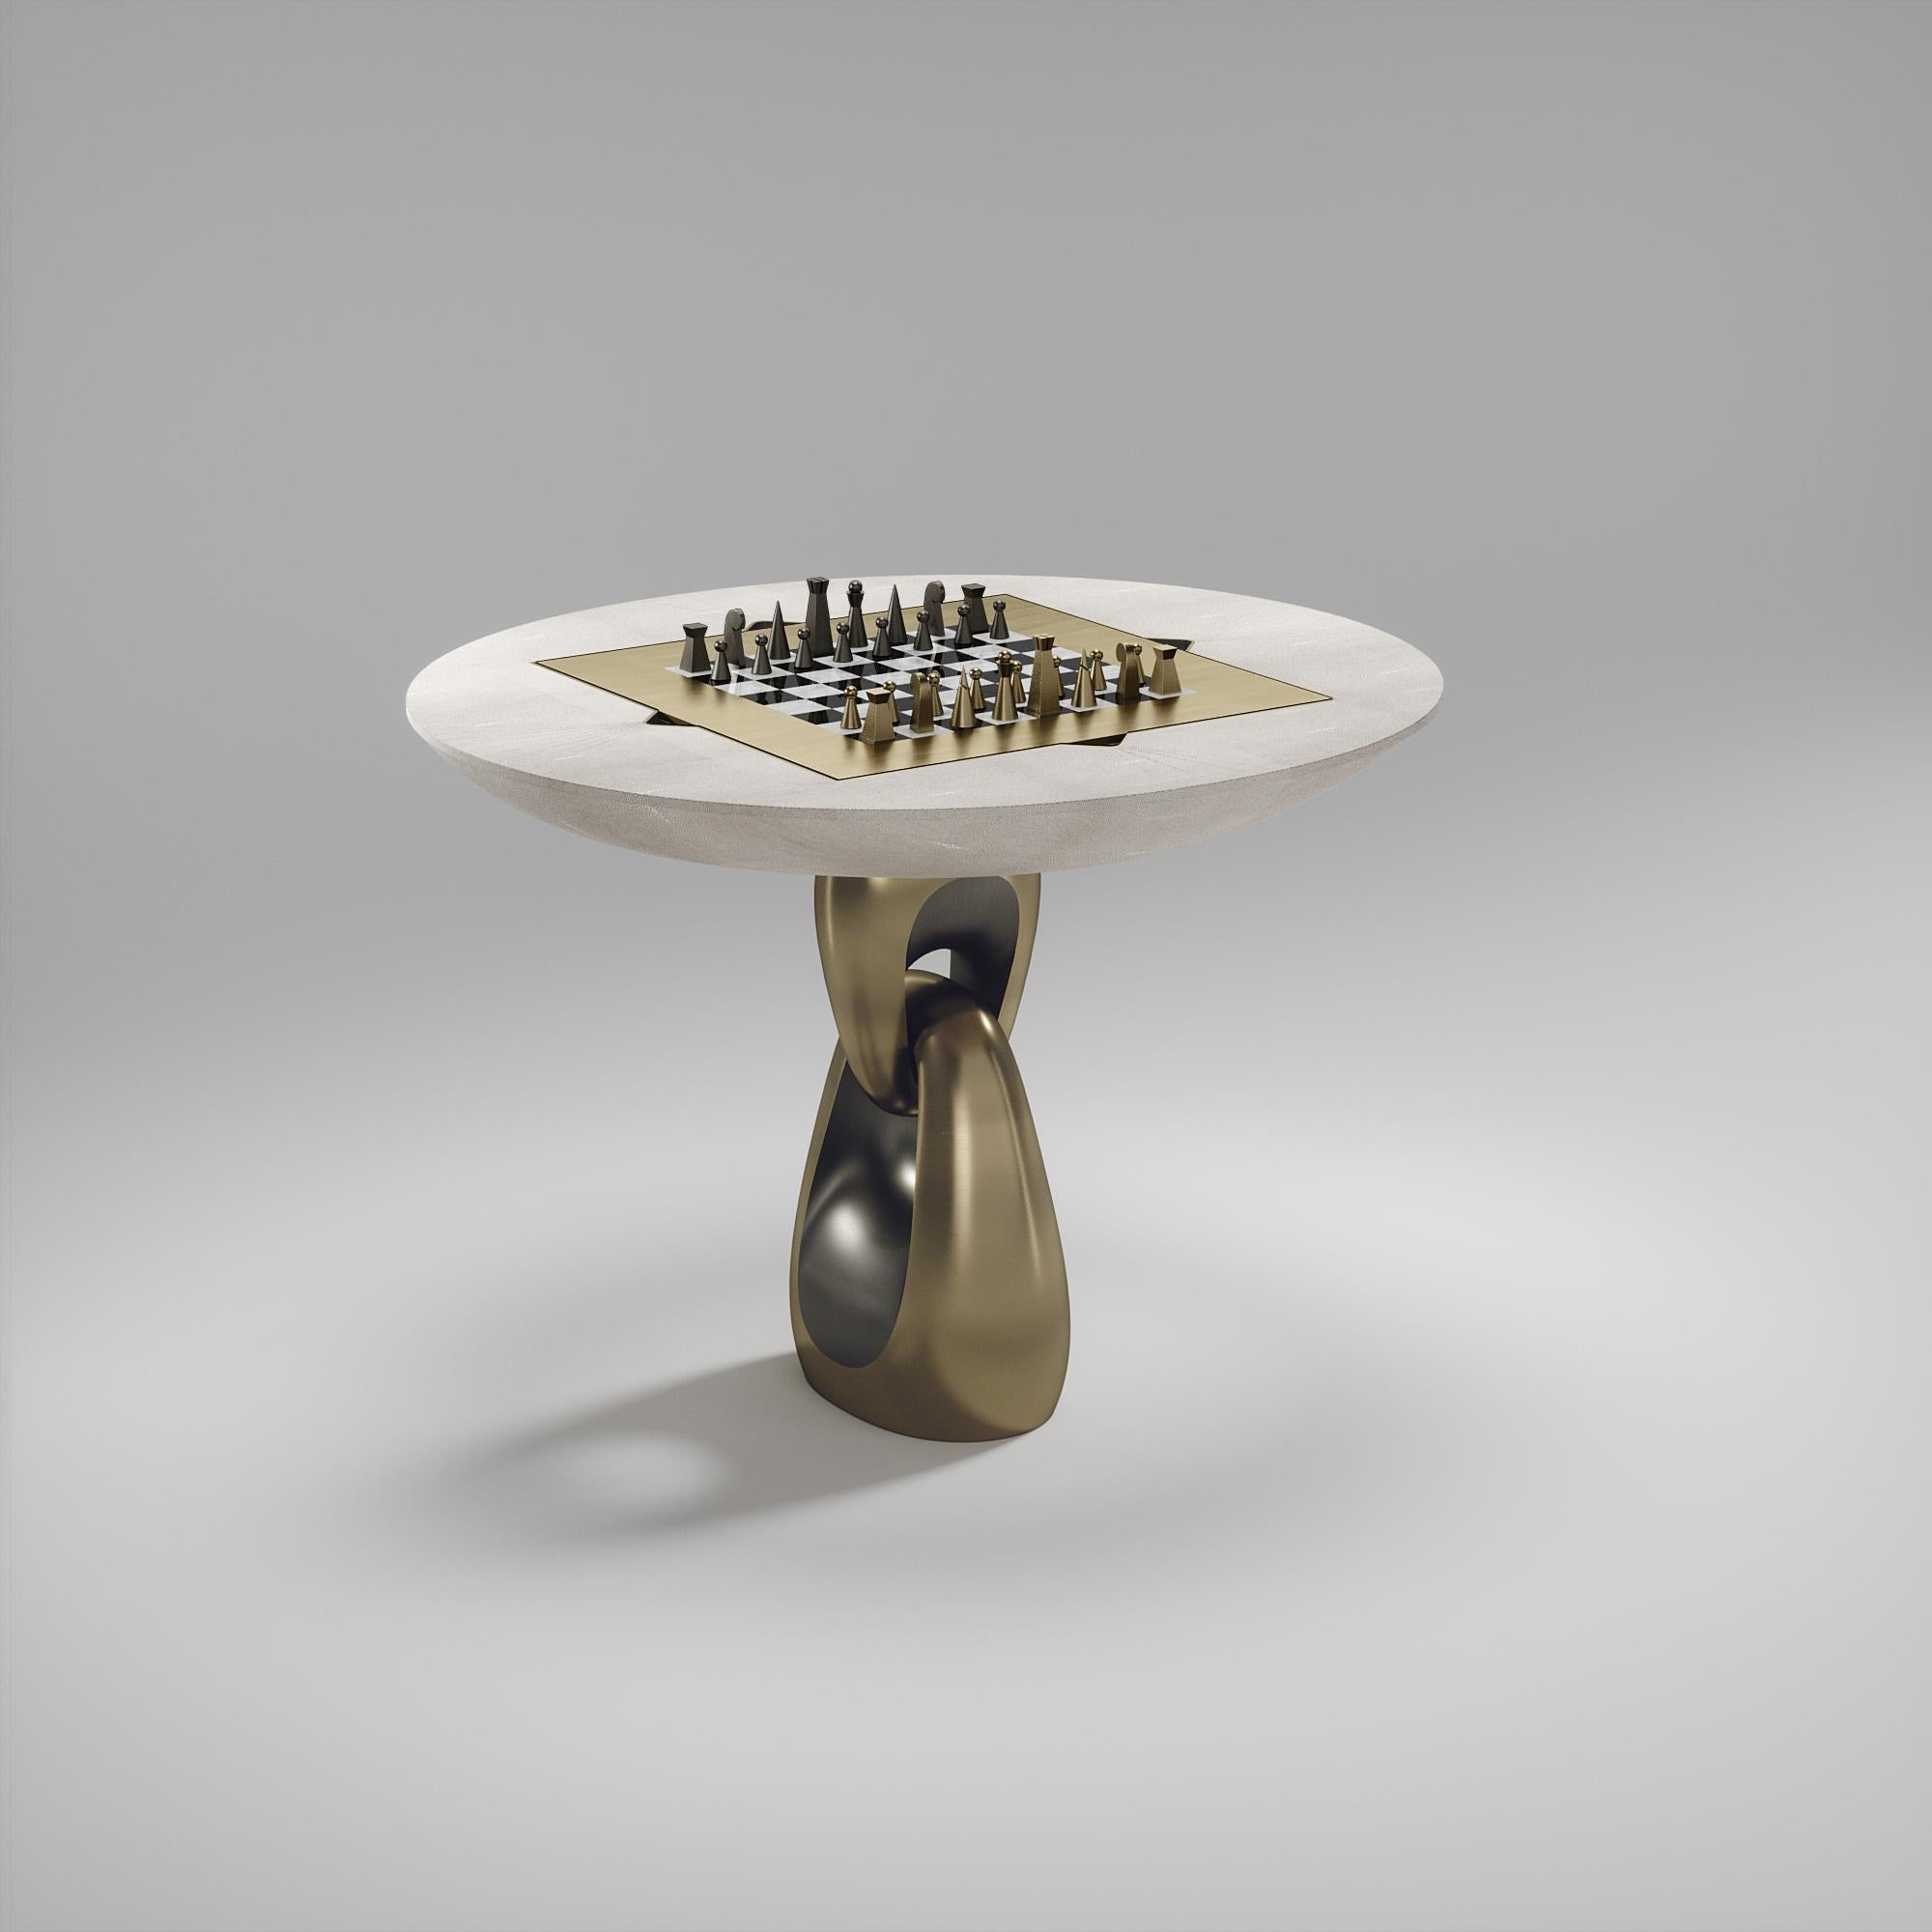 Le plateau de la table de jeu Saturn est fait en coquille de stylo marron, ainsi que les carrés d'échecs. Restes des pièces telles que montrées.
Les dimensions de cette pièce sont les suivantes 
101 x 108,6 x 75 cm

Chaise Thor à réaliser en